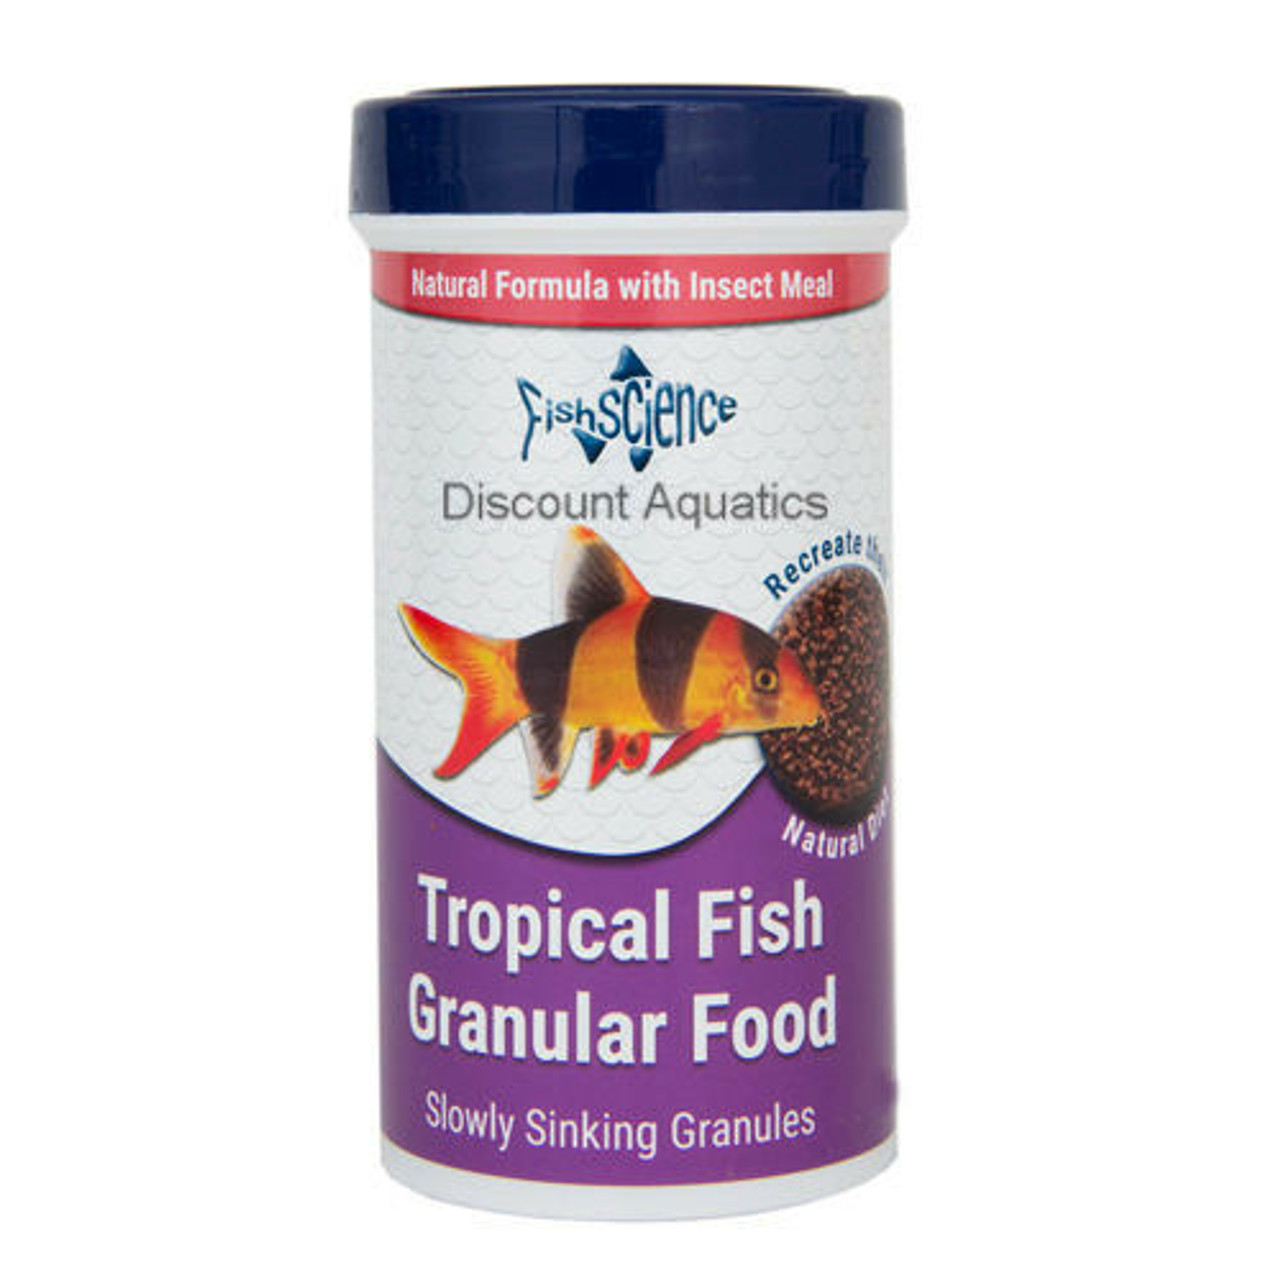 Fish Science Tropical Fish Granular Food 50g